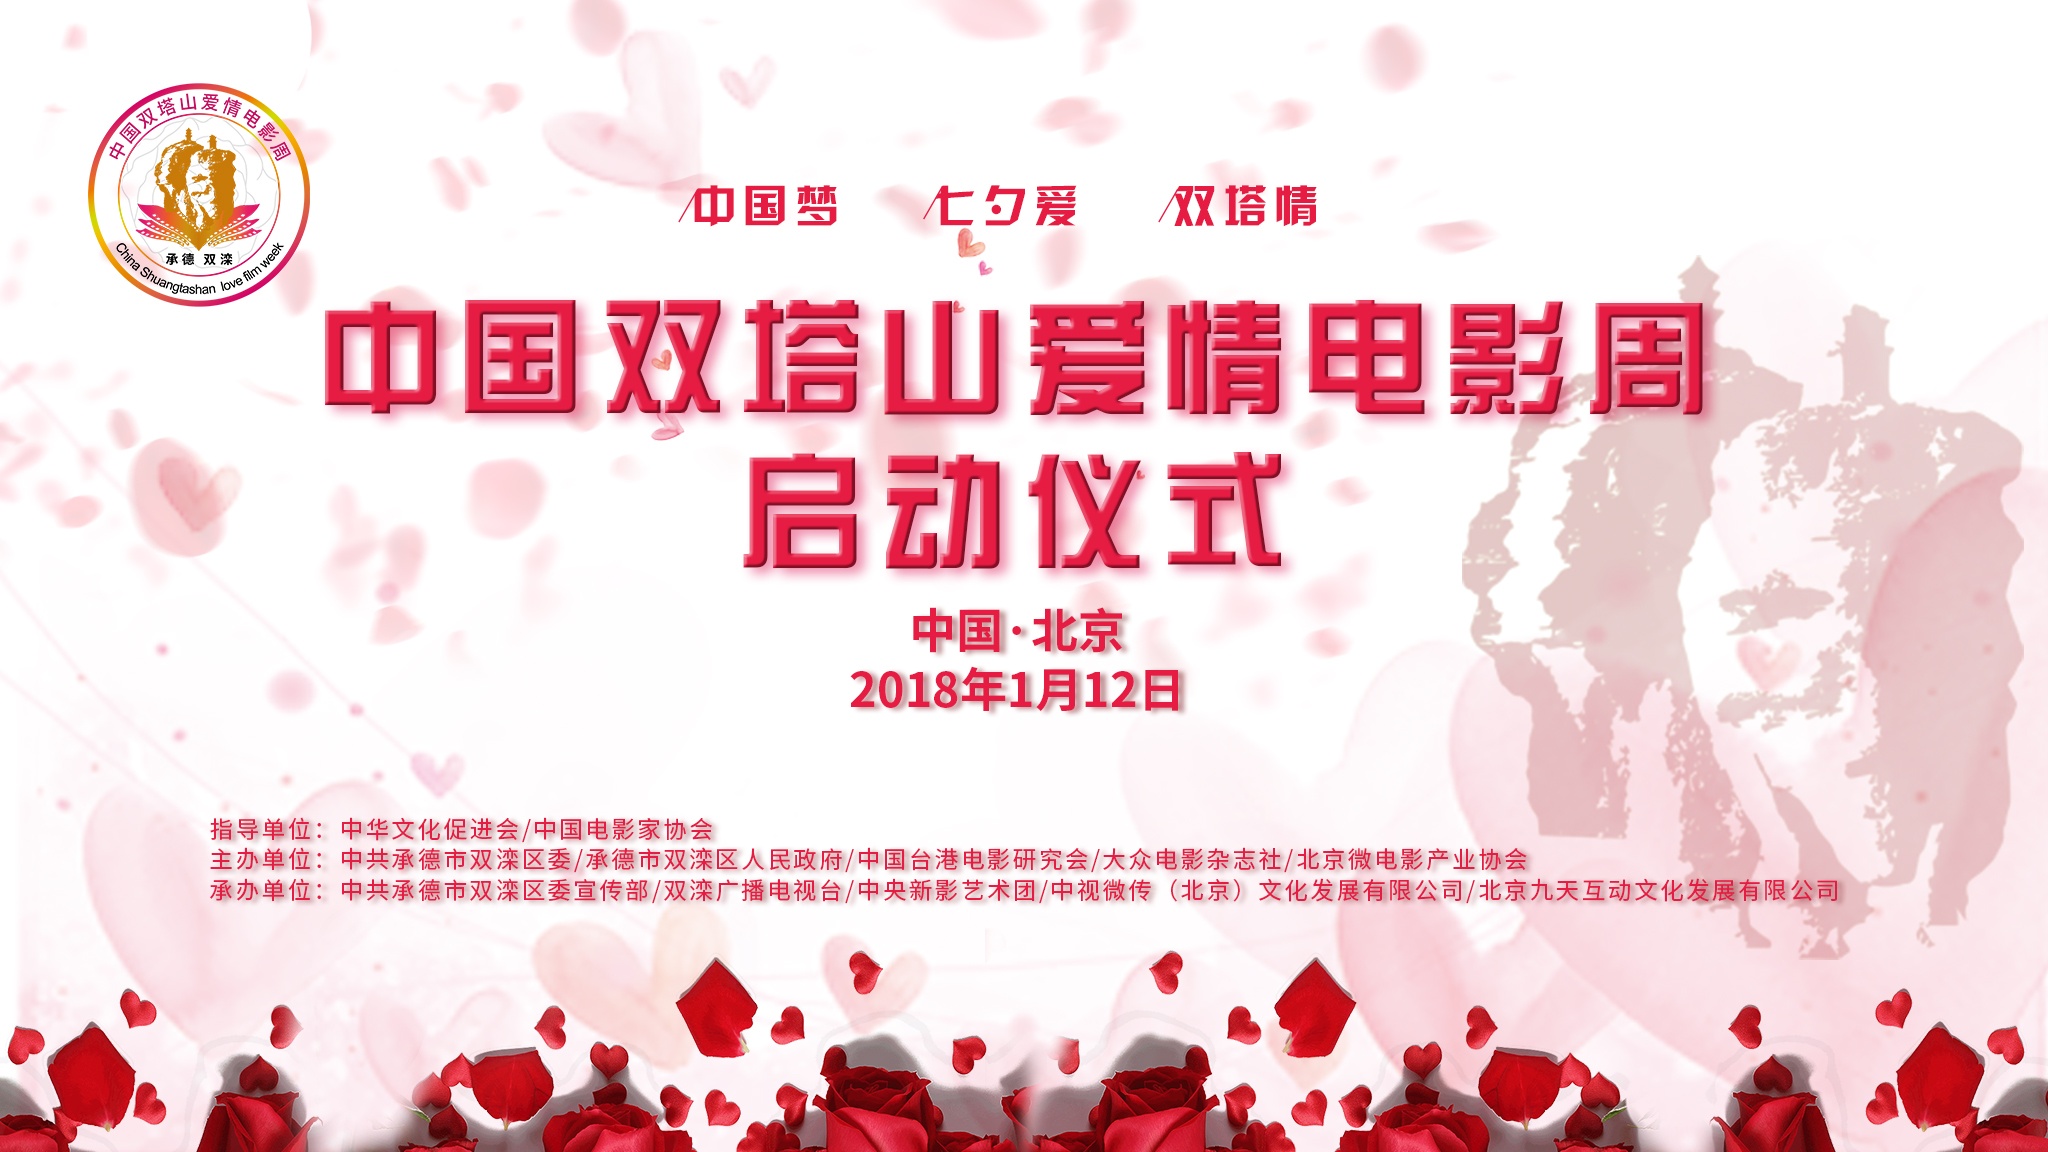 中国双塔山爱情电影周启动 提高爱情电影艺术水准